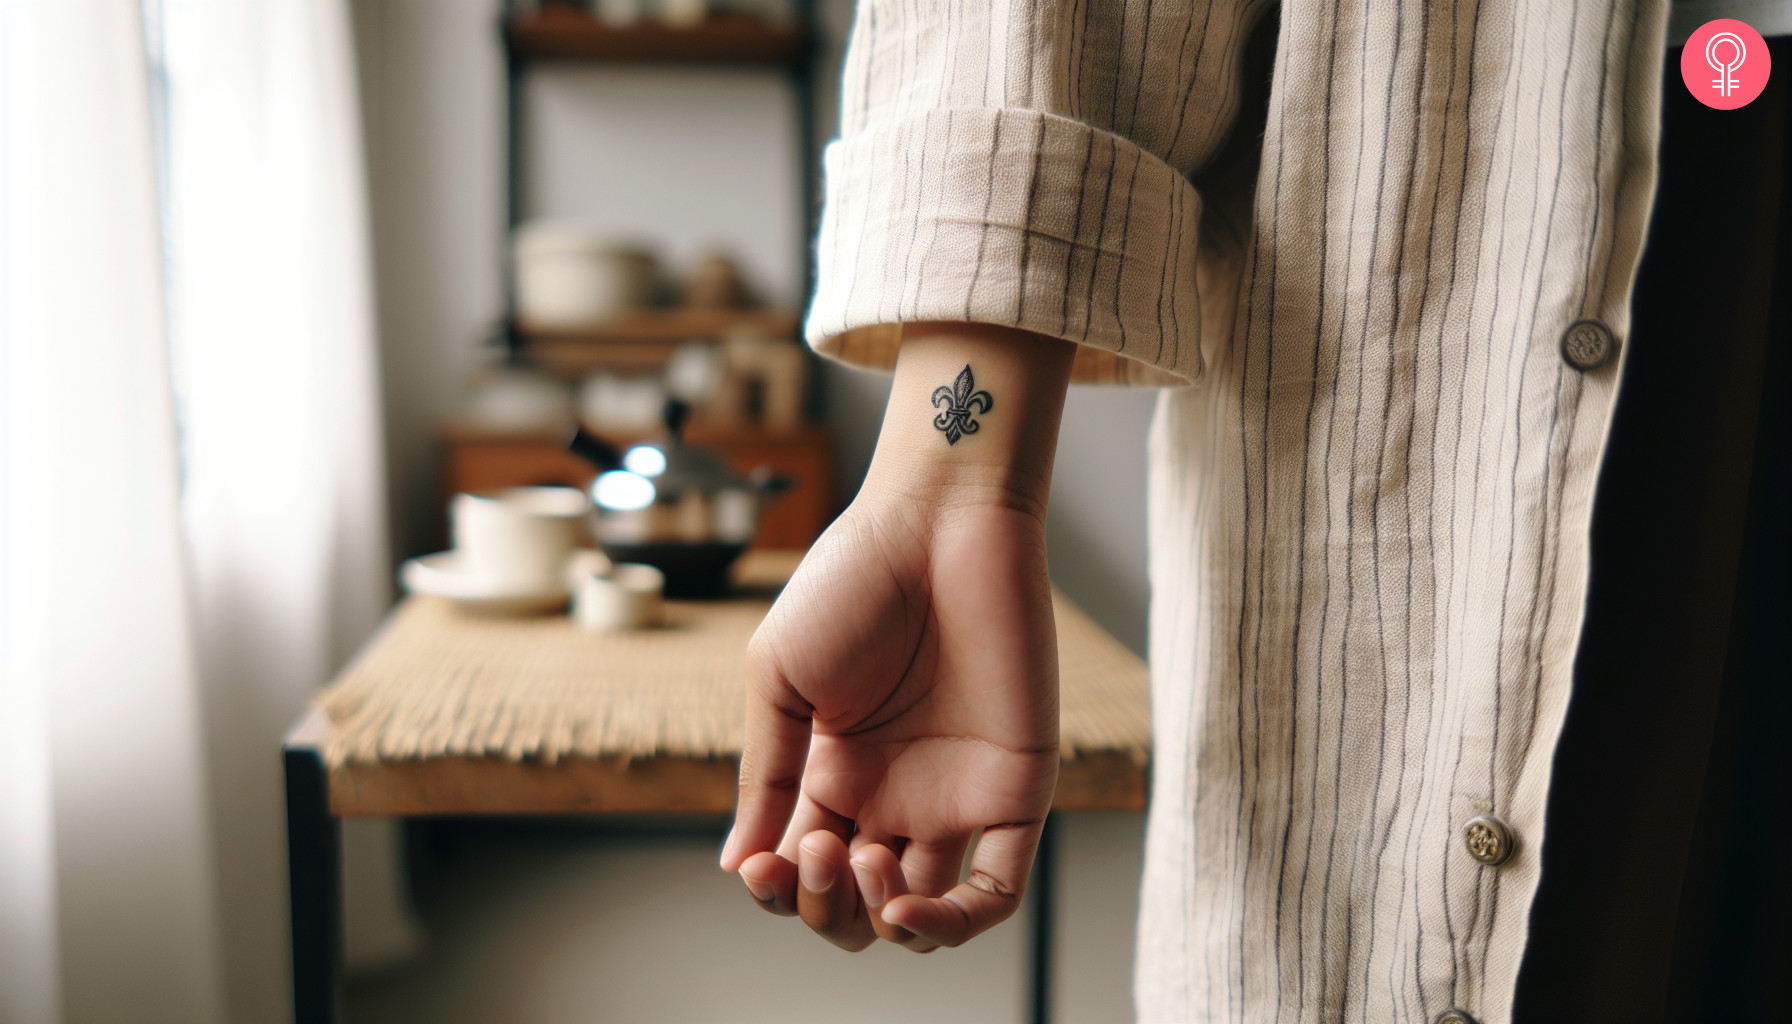 A fleur de lis tattoo on the wrist